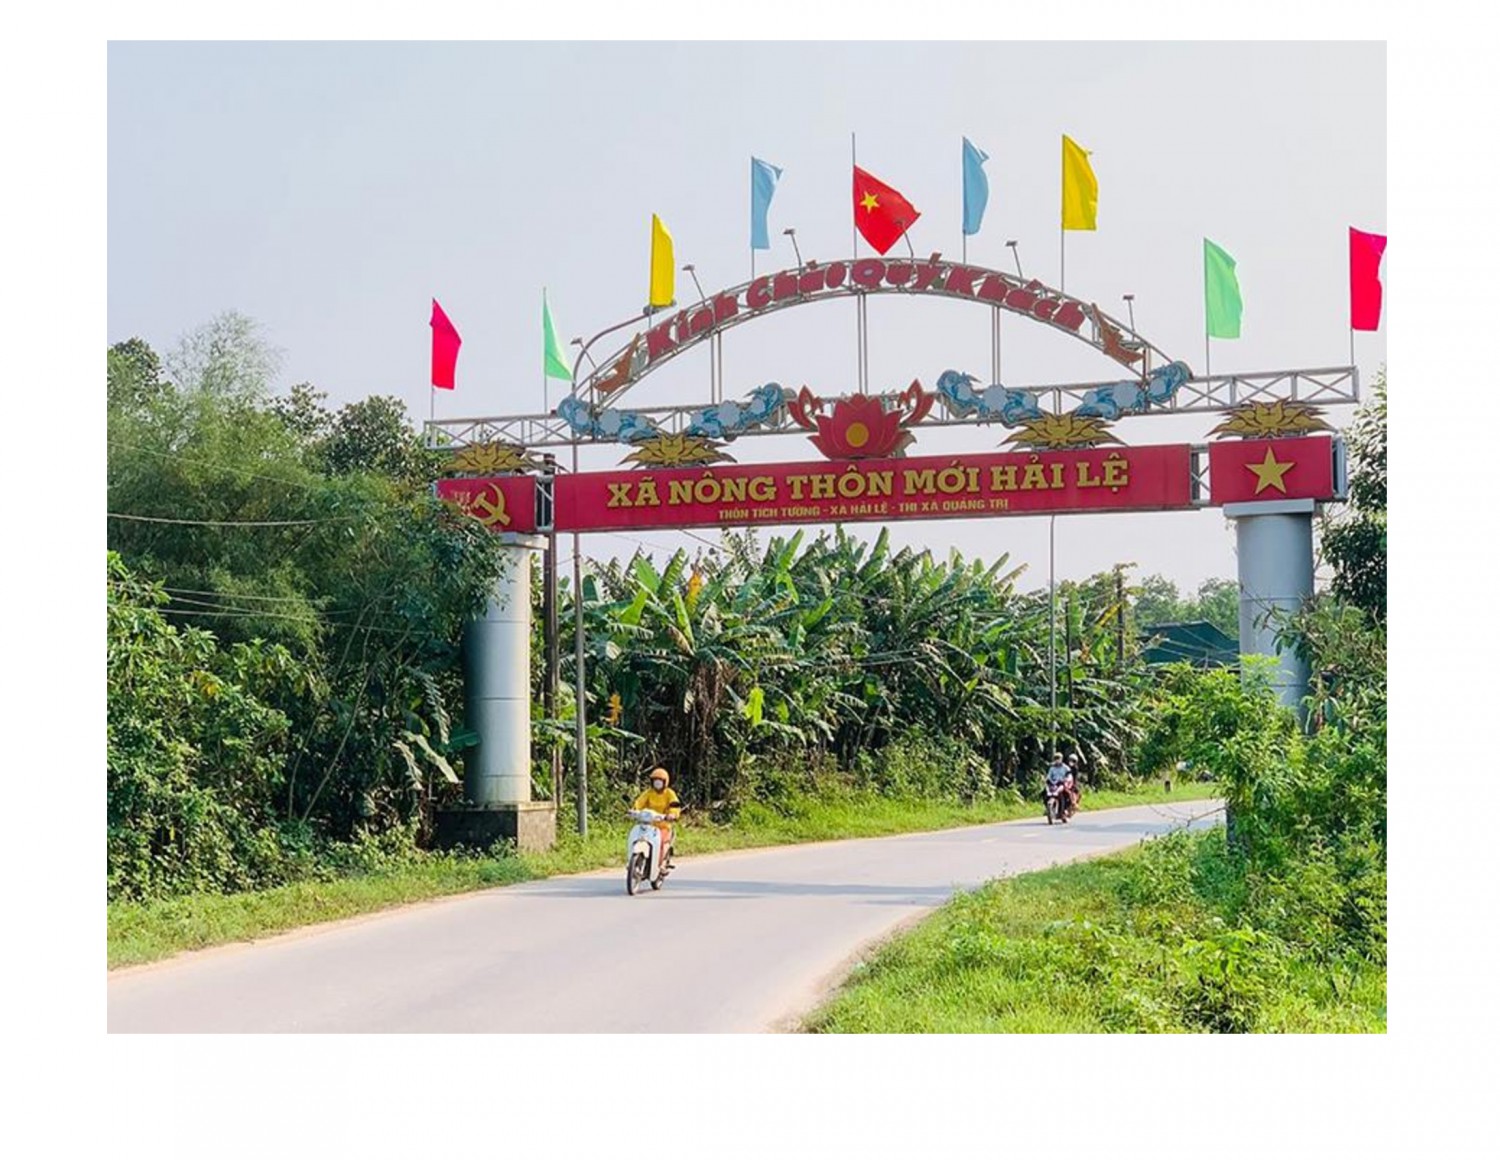 Giao thông nông thôn được hoàn thiện đã tạo điều kiện thuận lợi cho xã Hải Lệ, thị xã Quảng Trị trong phát triển kinh tế- xã hội